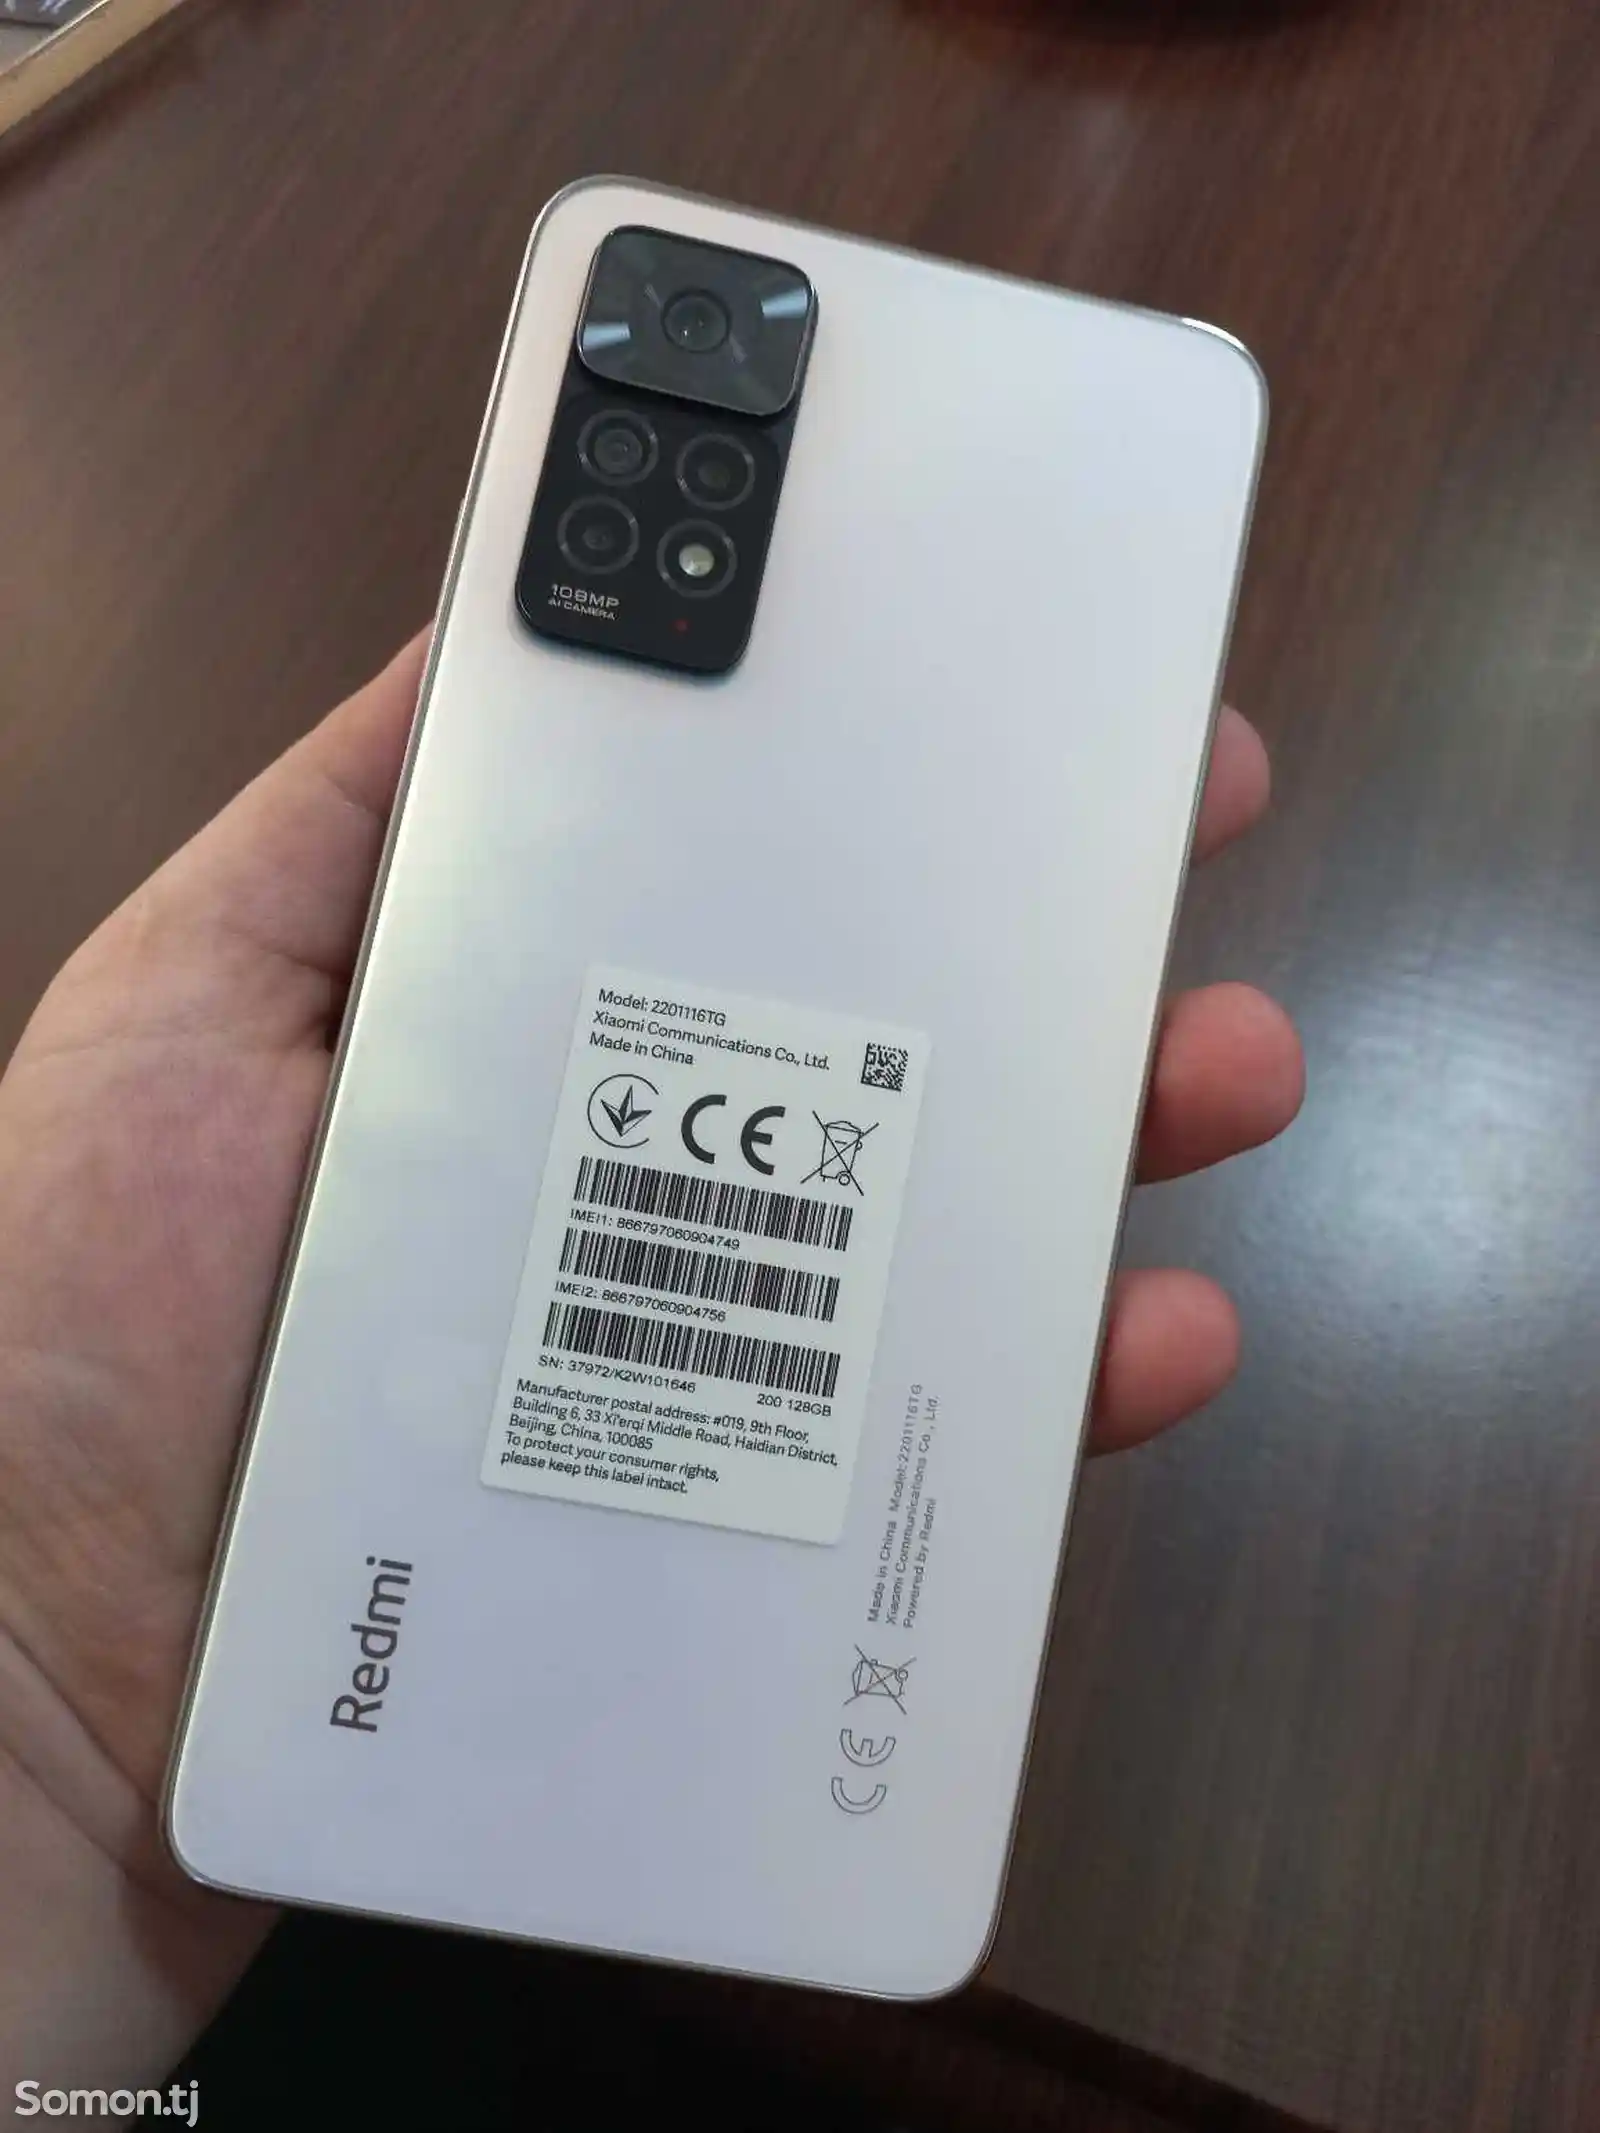 Xiaomi Redmi Note 11 Pro-2